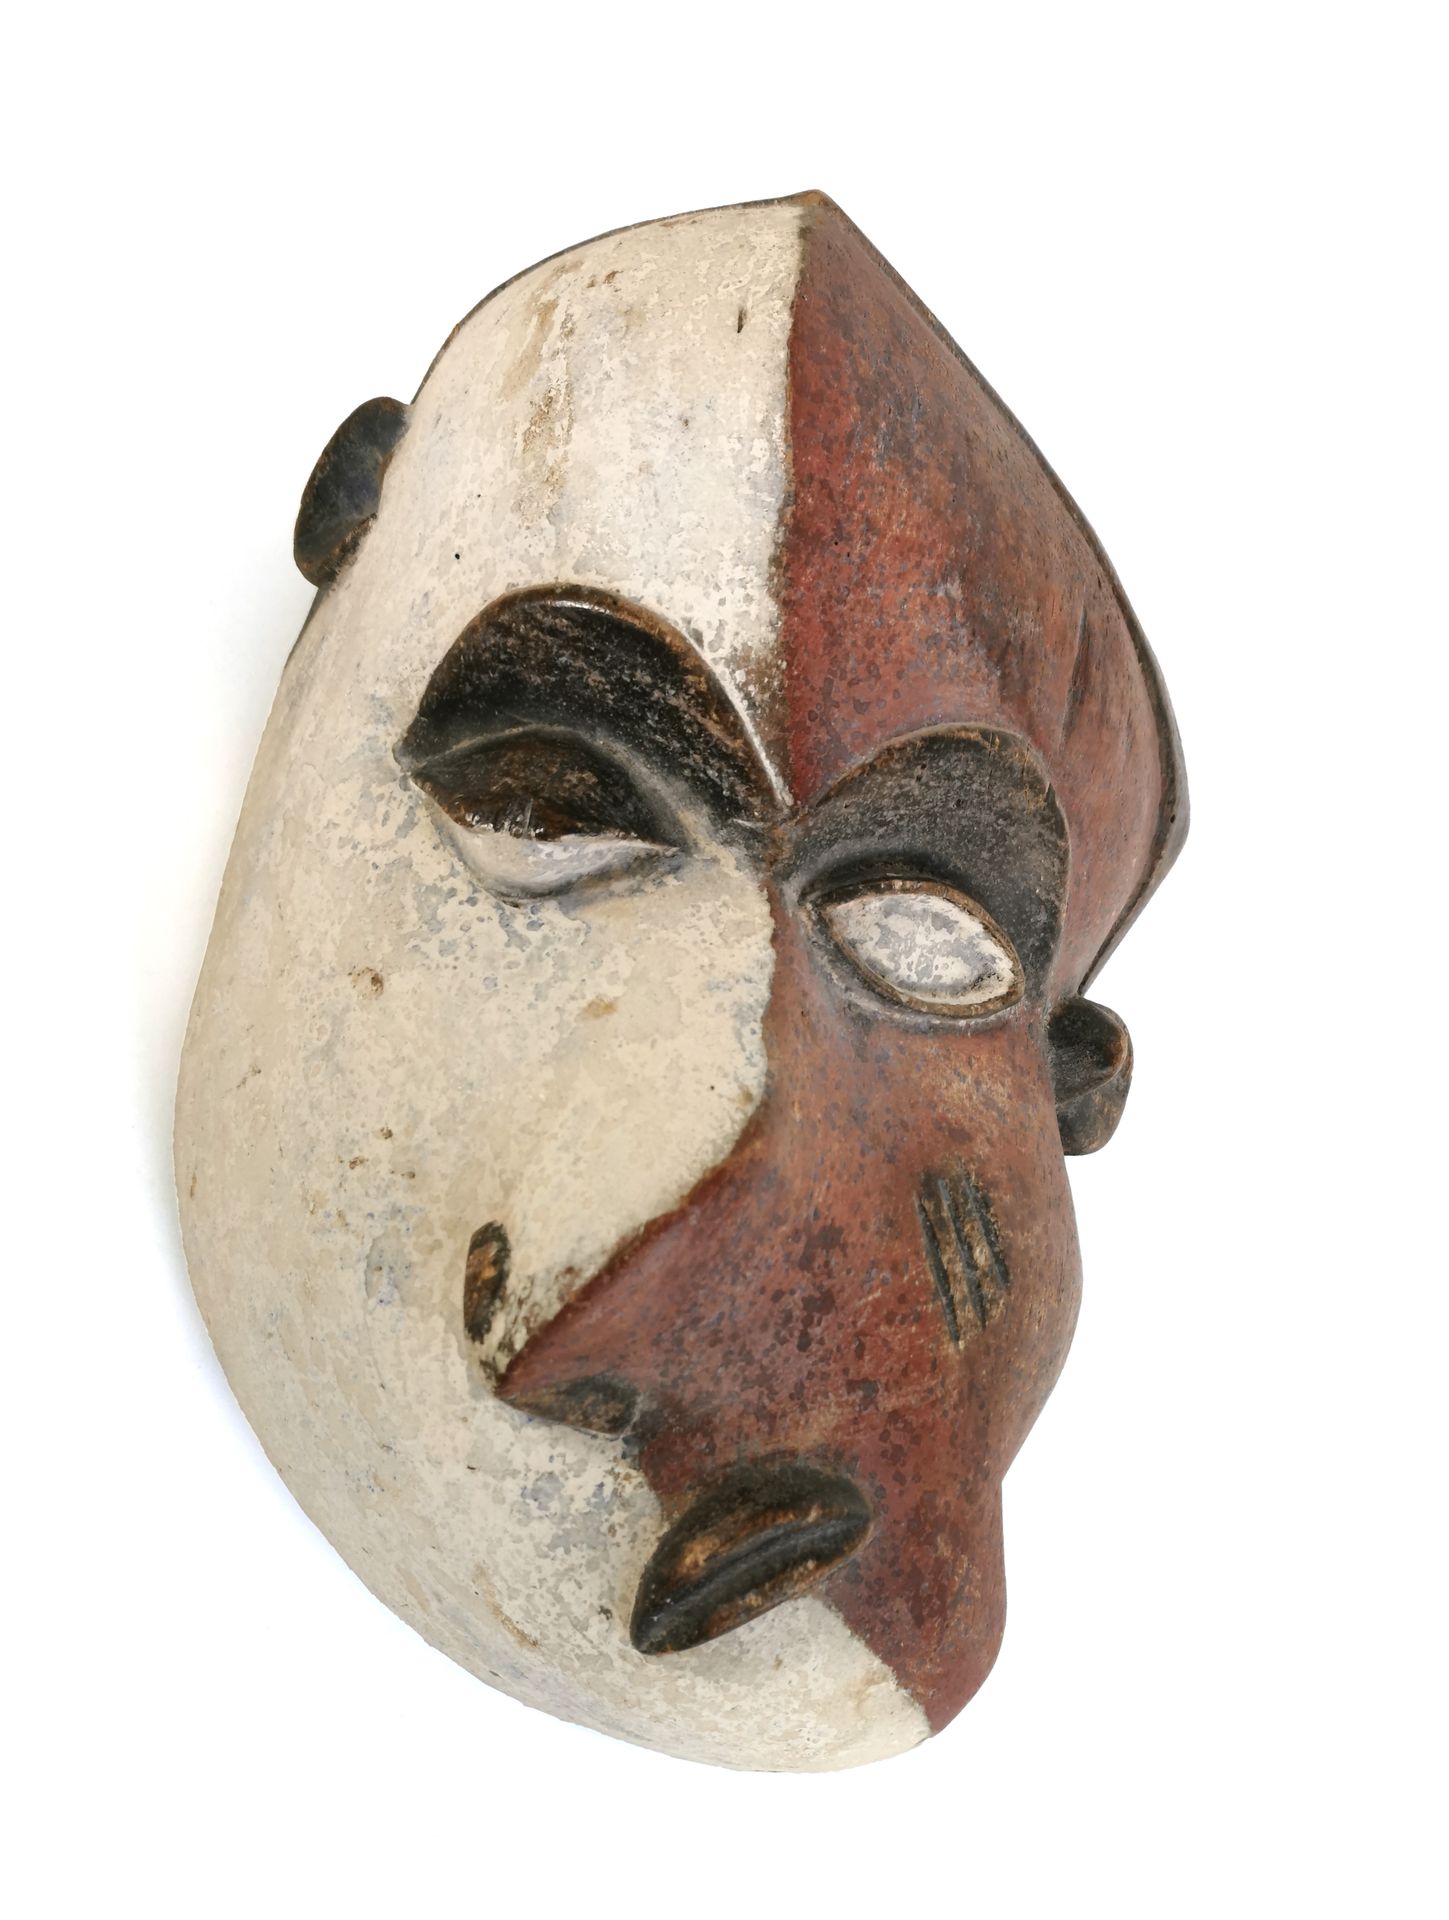 Null PENDE面具 - 刚果民主共和国

被称为 "疾病 "口罩的癫痫或疟疾口罩 

用于殖民时期的装饰性面具 

H.28 x 19 cm